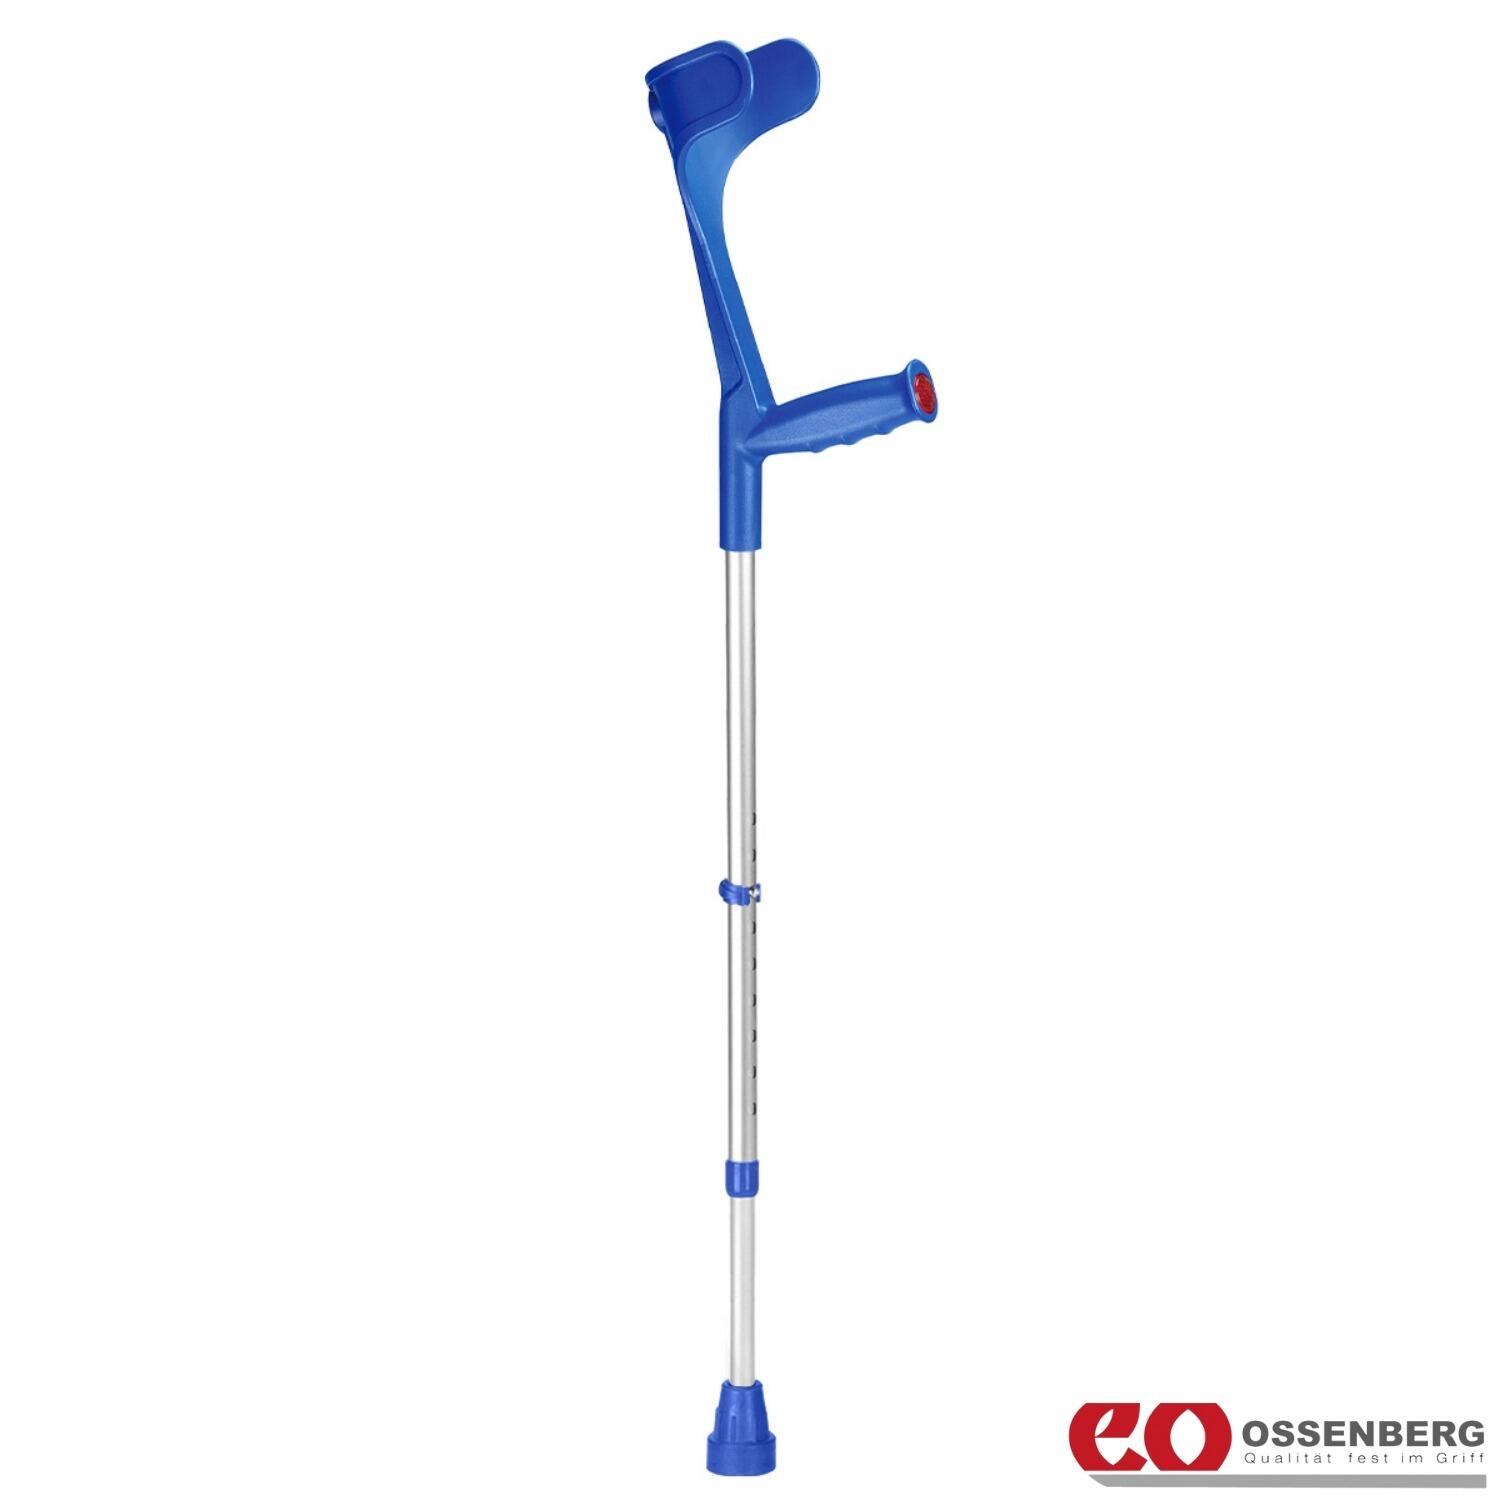 Ossenberg-Classic-Open-Cuff-Crutch-Blue